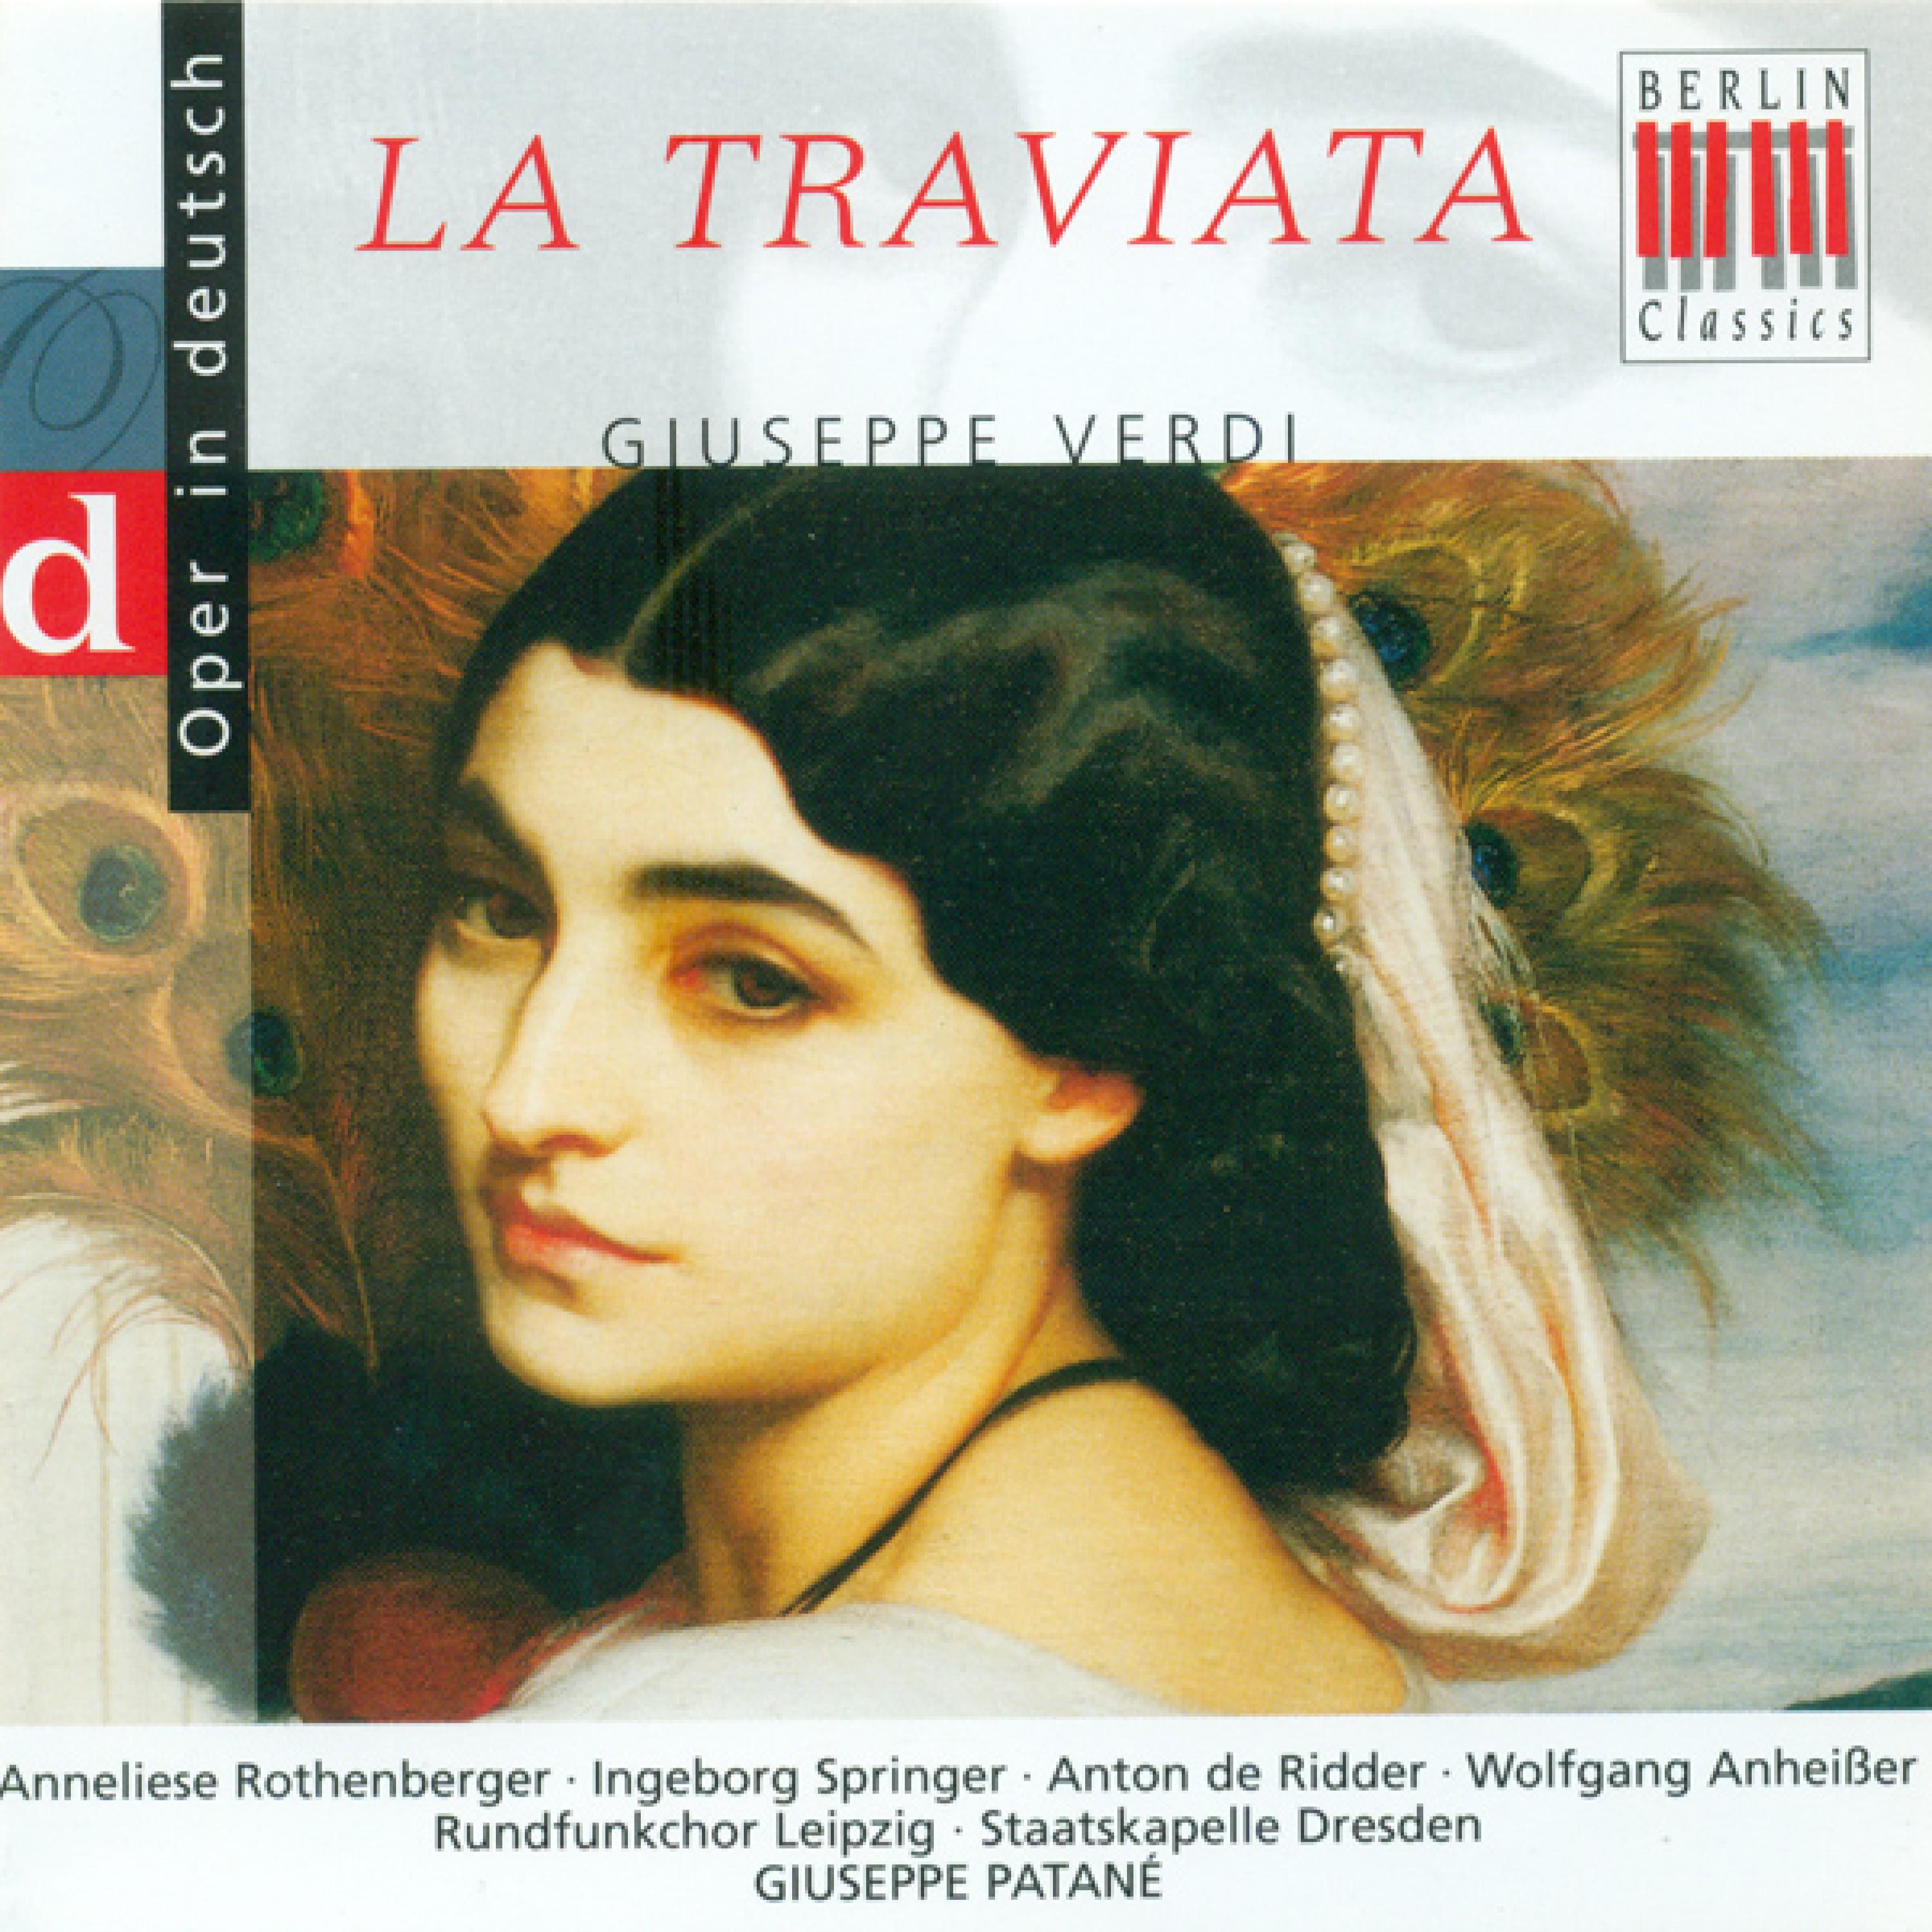 La Traviata, Act II: "Mir zu folgen gab ich ihm ein Zeichen"